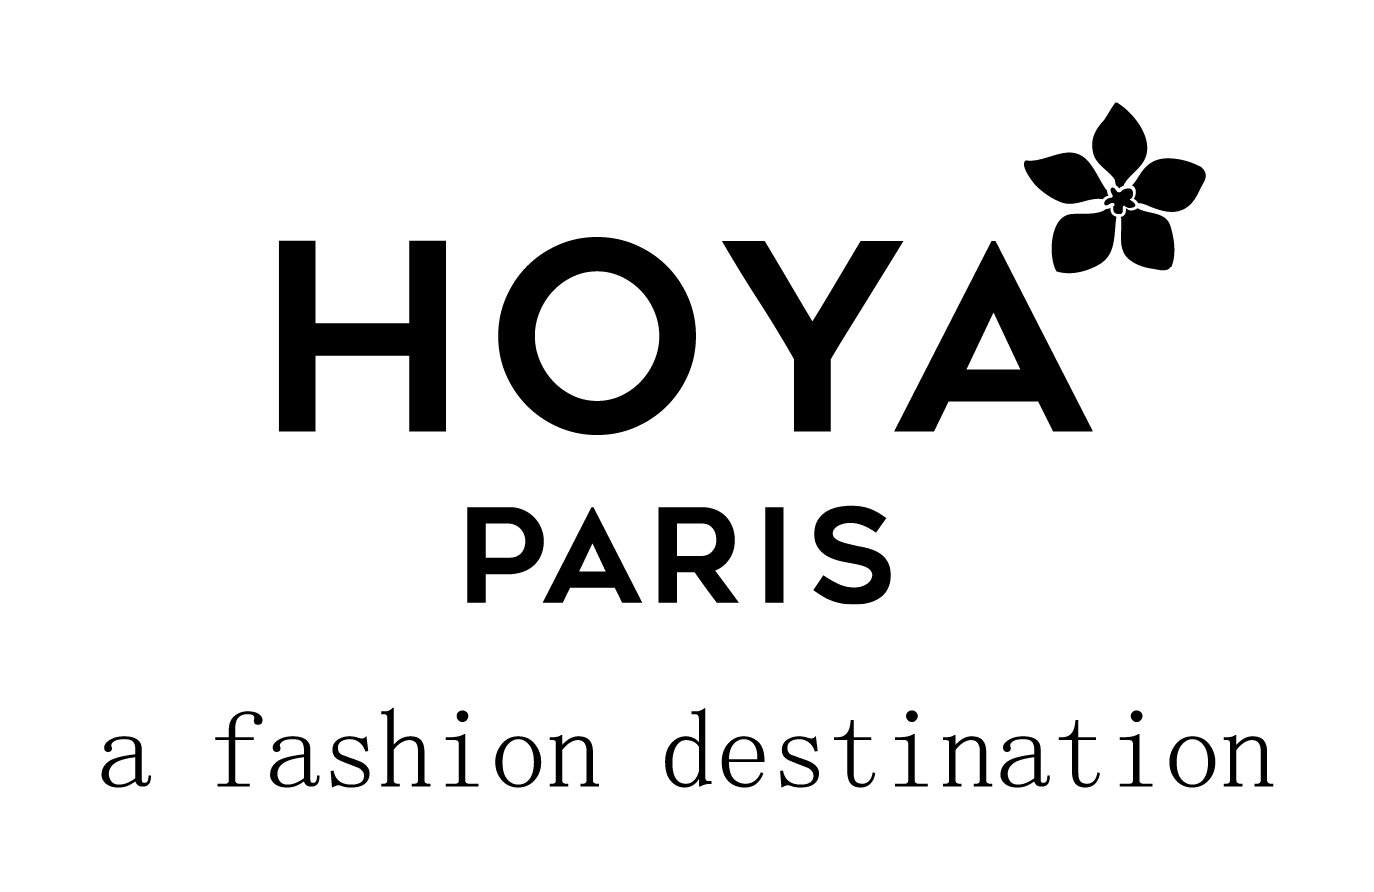 HOYA PARIS